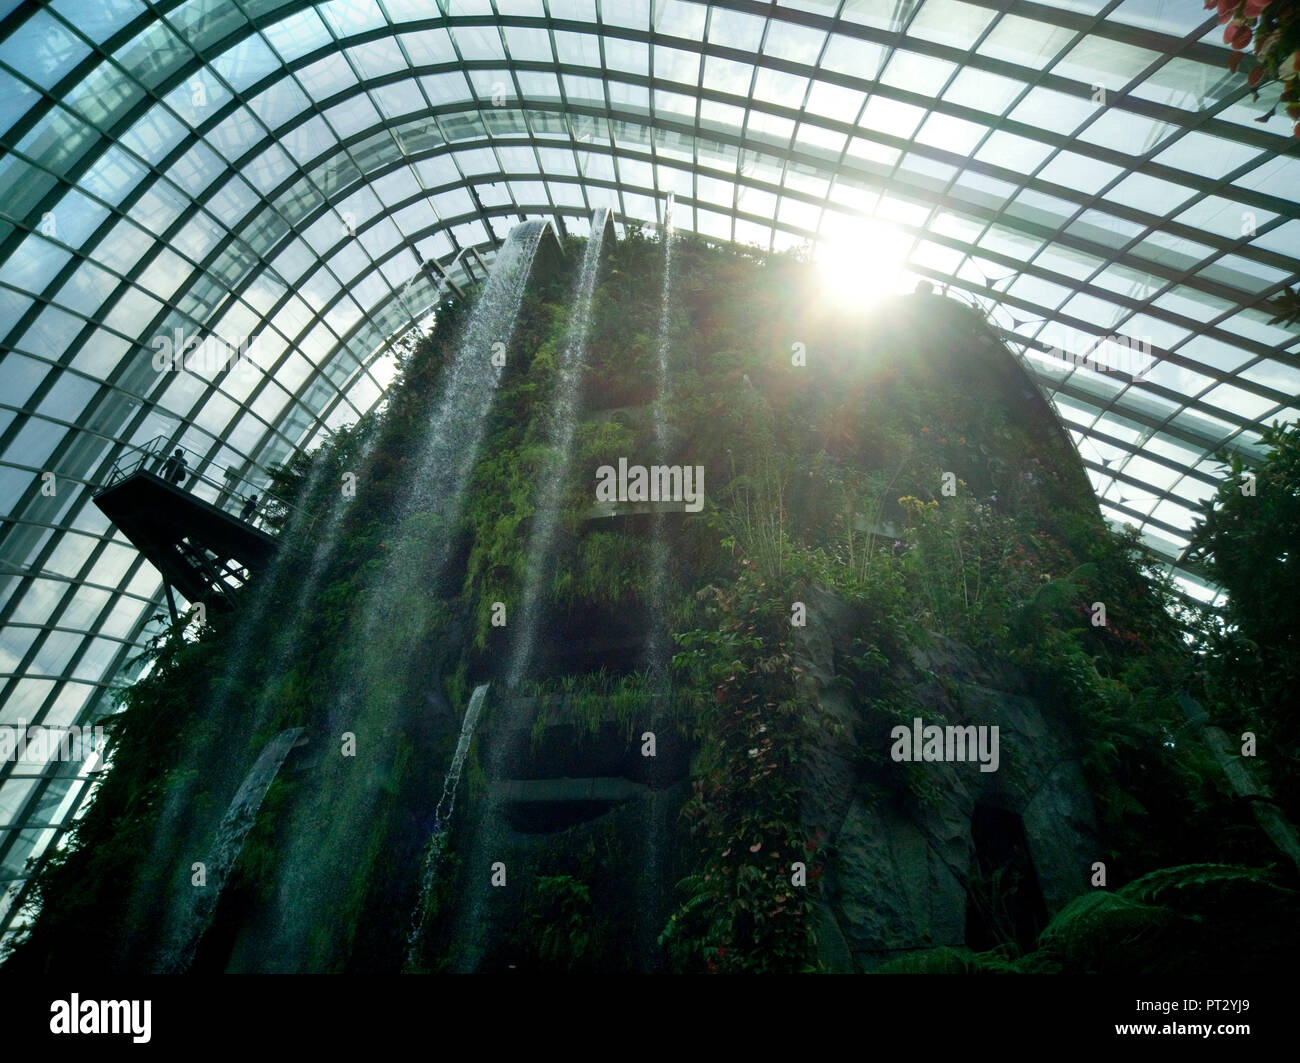 Monde Perdu dans les jardins de la baie, à Singapour, les architectes : Wilkinson Eyre Architects, Grant Associates, 2011. Cloud Forest Dome Banque D'Images